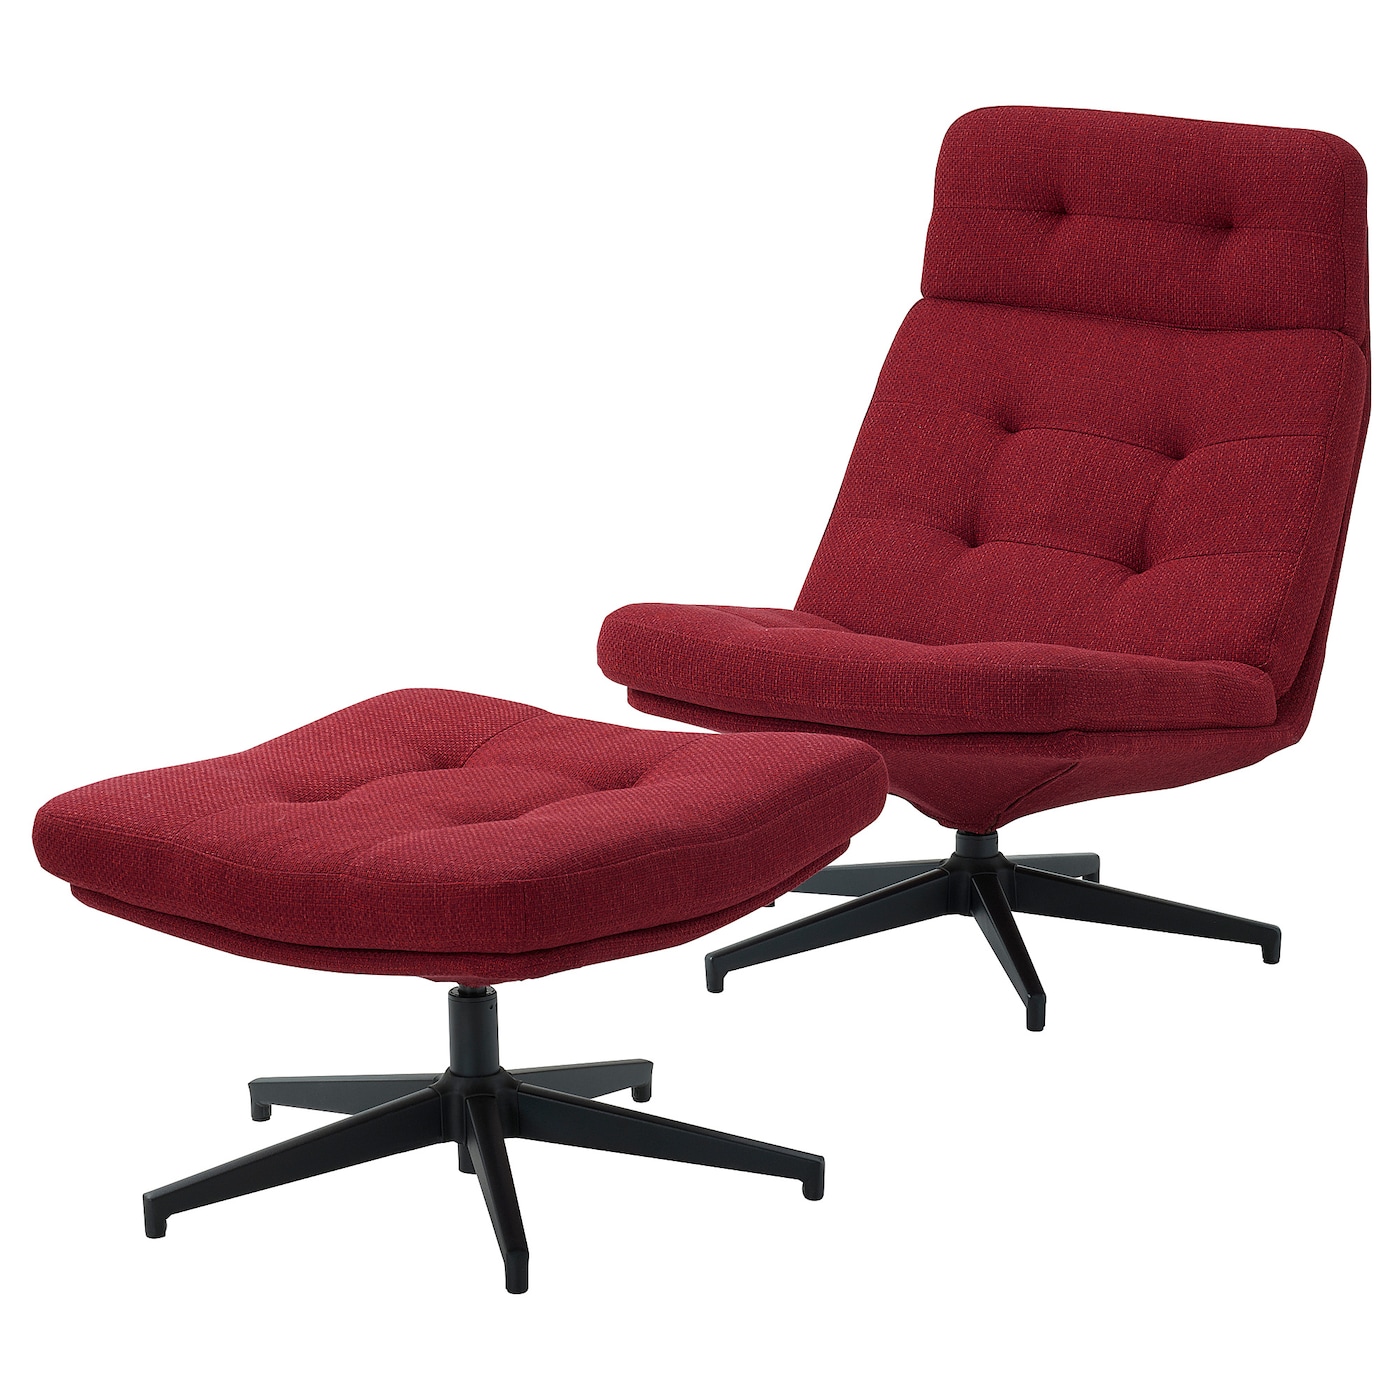 ХАВБЕРГ Кресло и подставка для ног, Лейде красный/коричневый HAVBERG IKEA дизайнерское эргономичное кресло расслабляющая подставка для ног вращающееся компьютерное кресло для геймеров откидное кожаное кресло